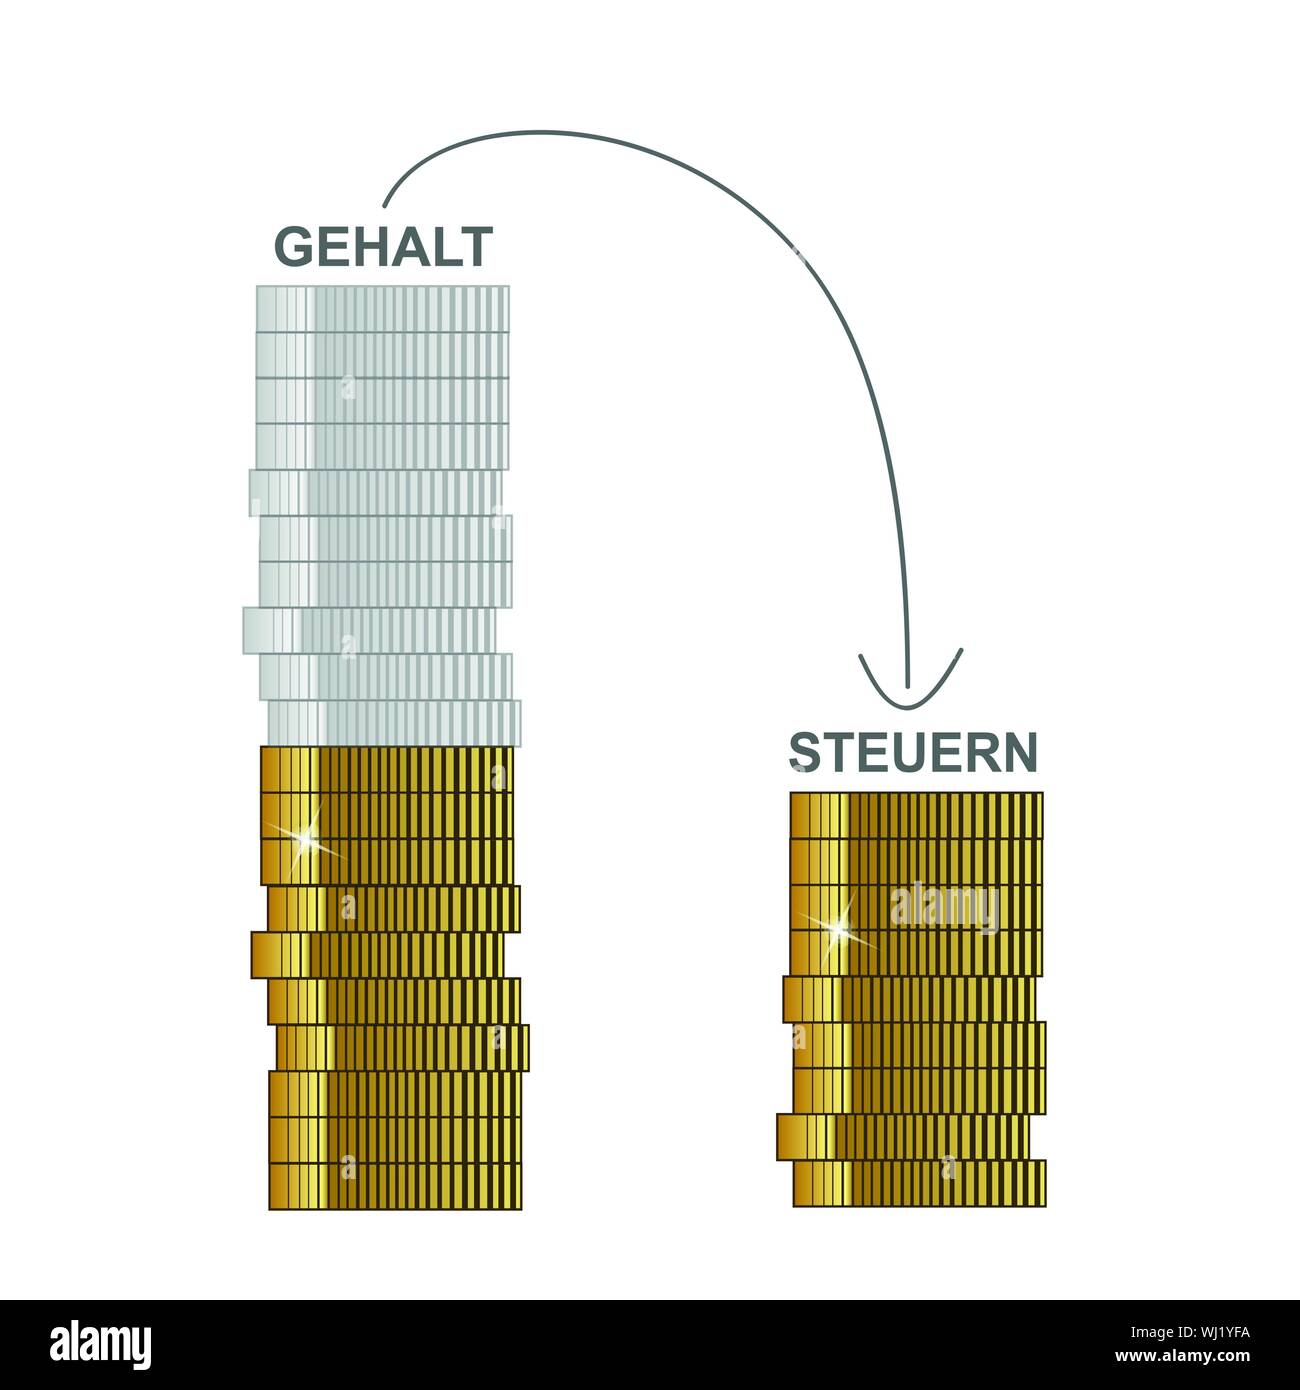 Gehalt und Steuerabzug Konzept mit goldenen Münzen Vektor-illustration EPS 10. Stock Vektor